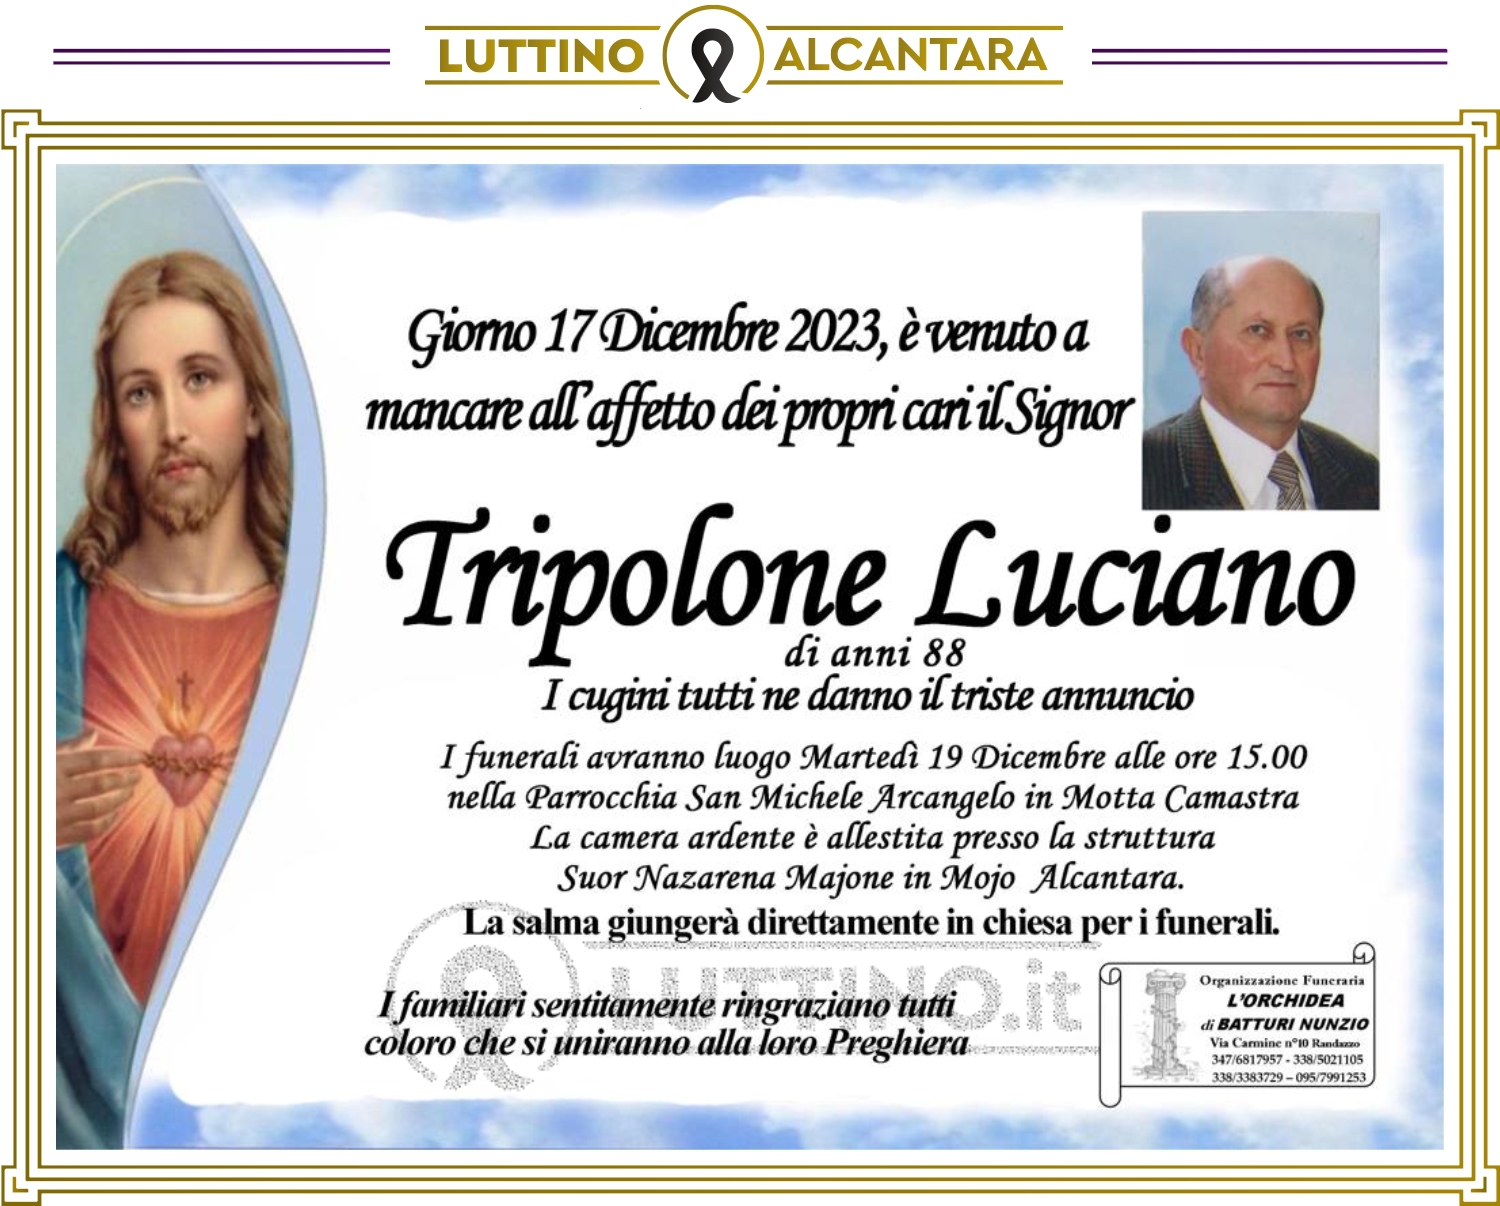 Luciano Tripolone